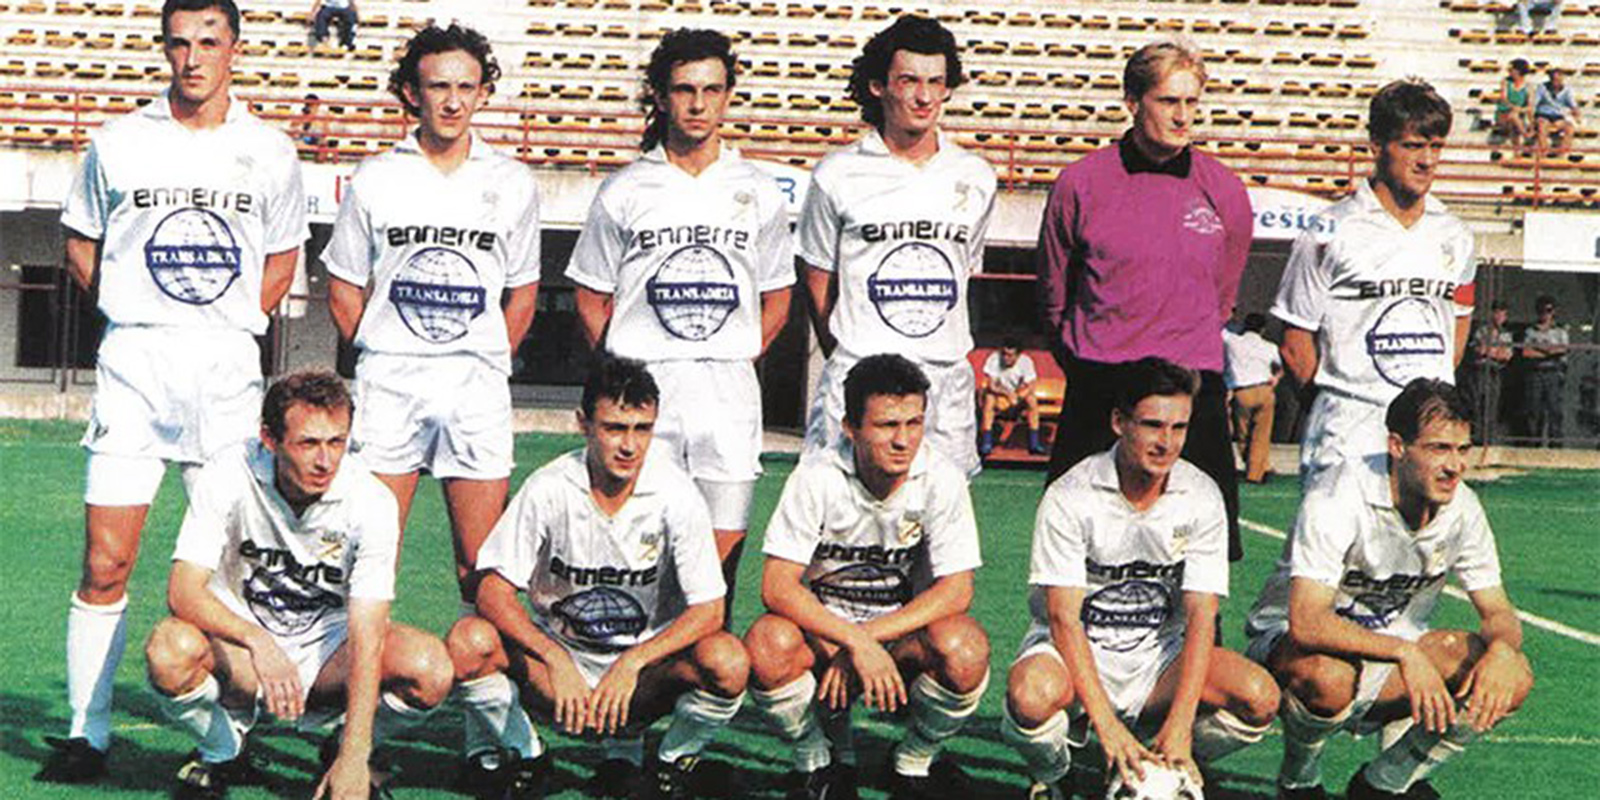 NK Osijek u prvom prvenstvu Hrvatske - HNL 1992 